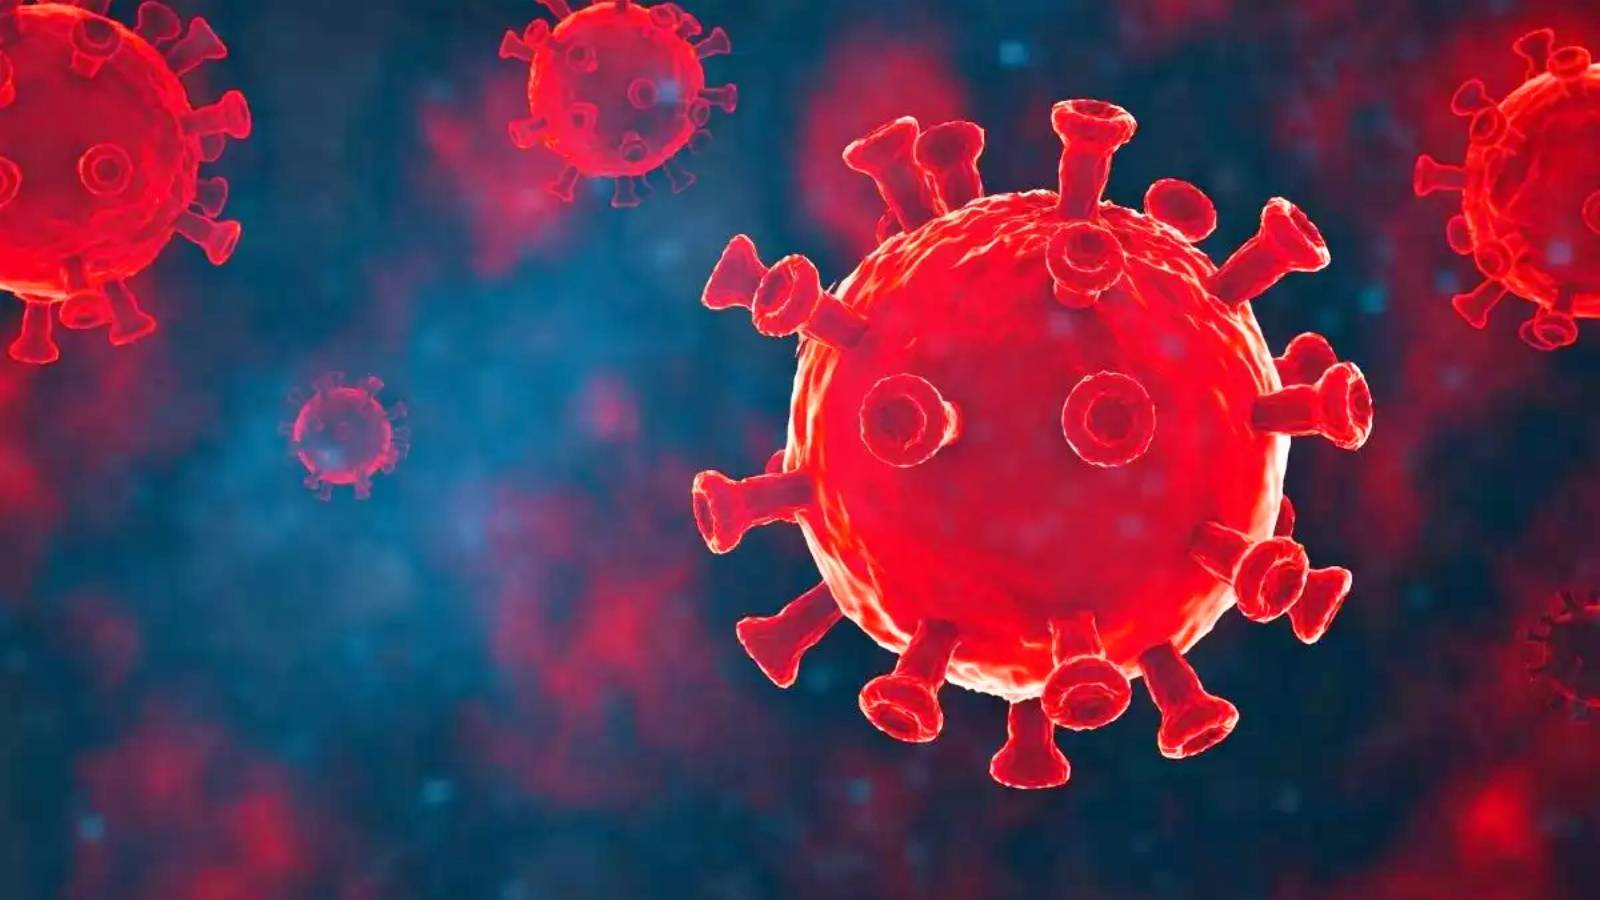 Koronaviruksen alavariantti BA.5.2.1 Omicron löysi Kiinan